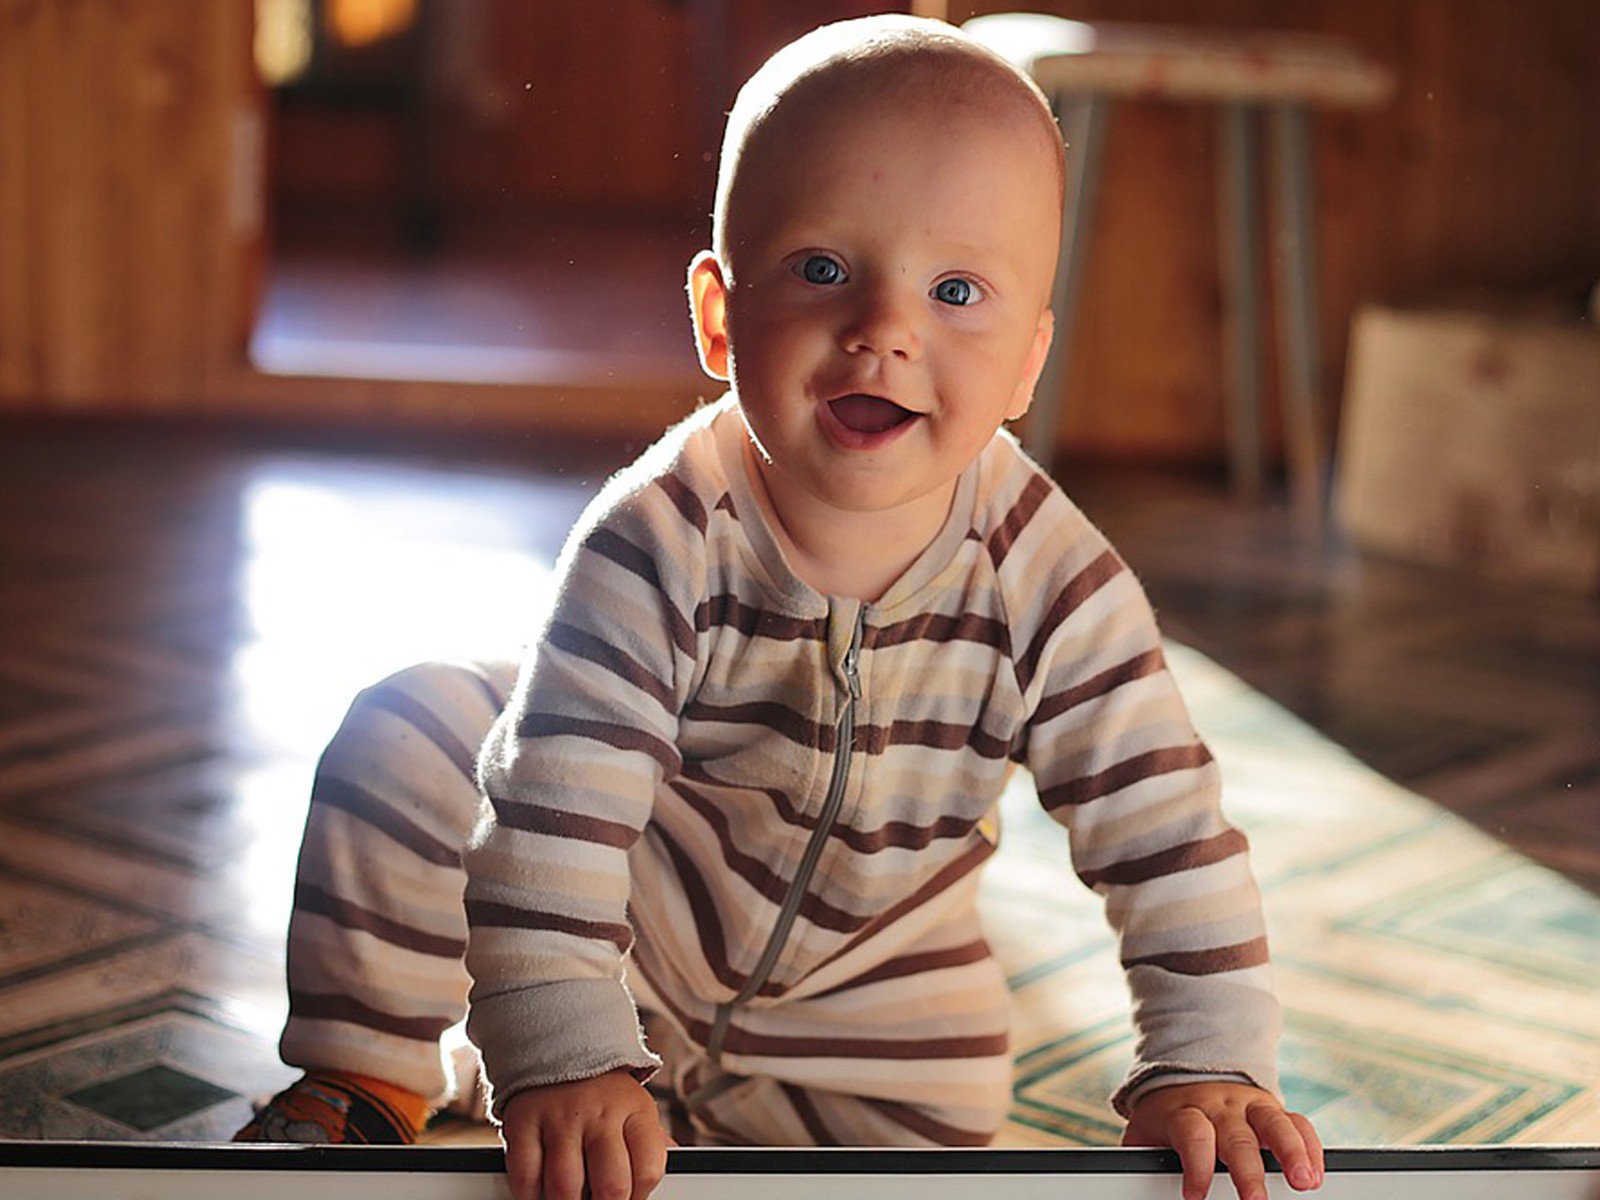 Teething in Babies: Symptoms and Remedies